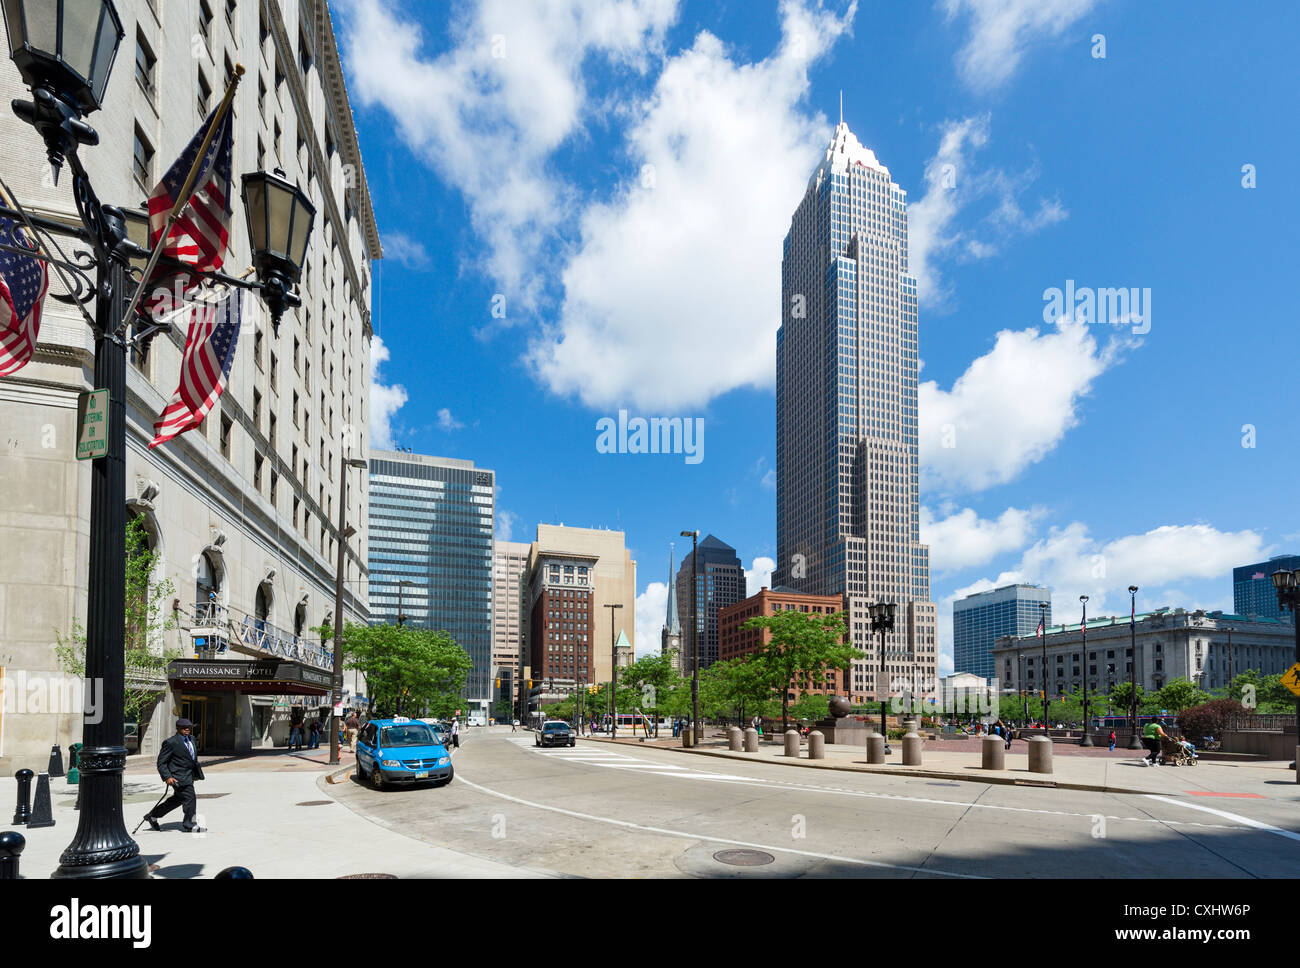 Plaza pública en el centro de la ciudad de Cleveland, Ohio, EE.UU. Foto de stock